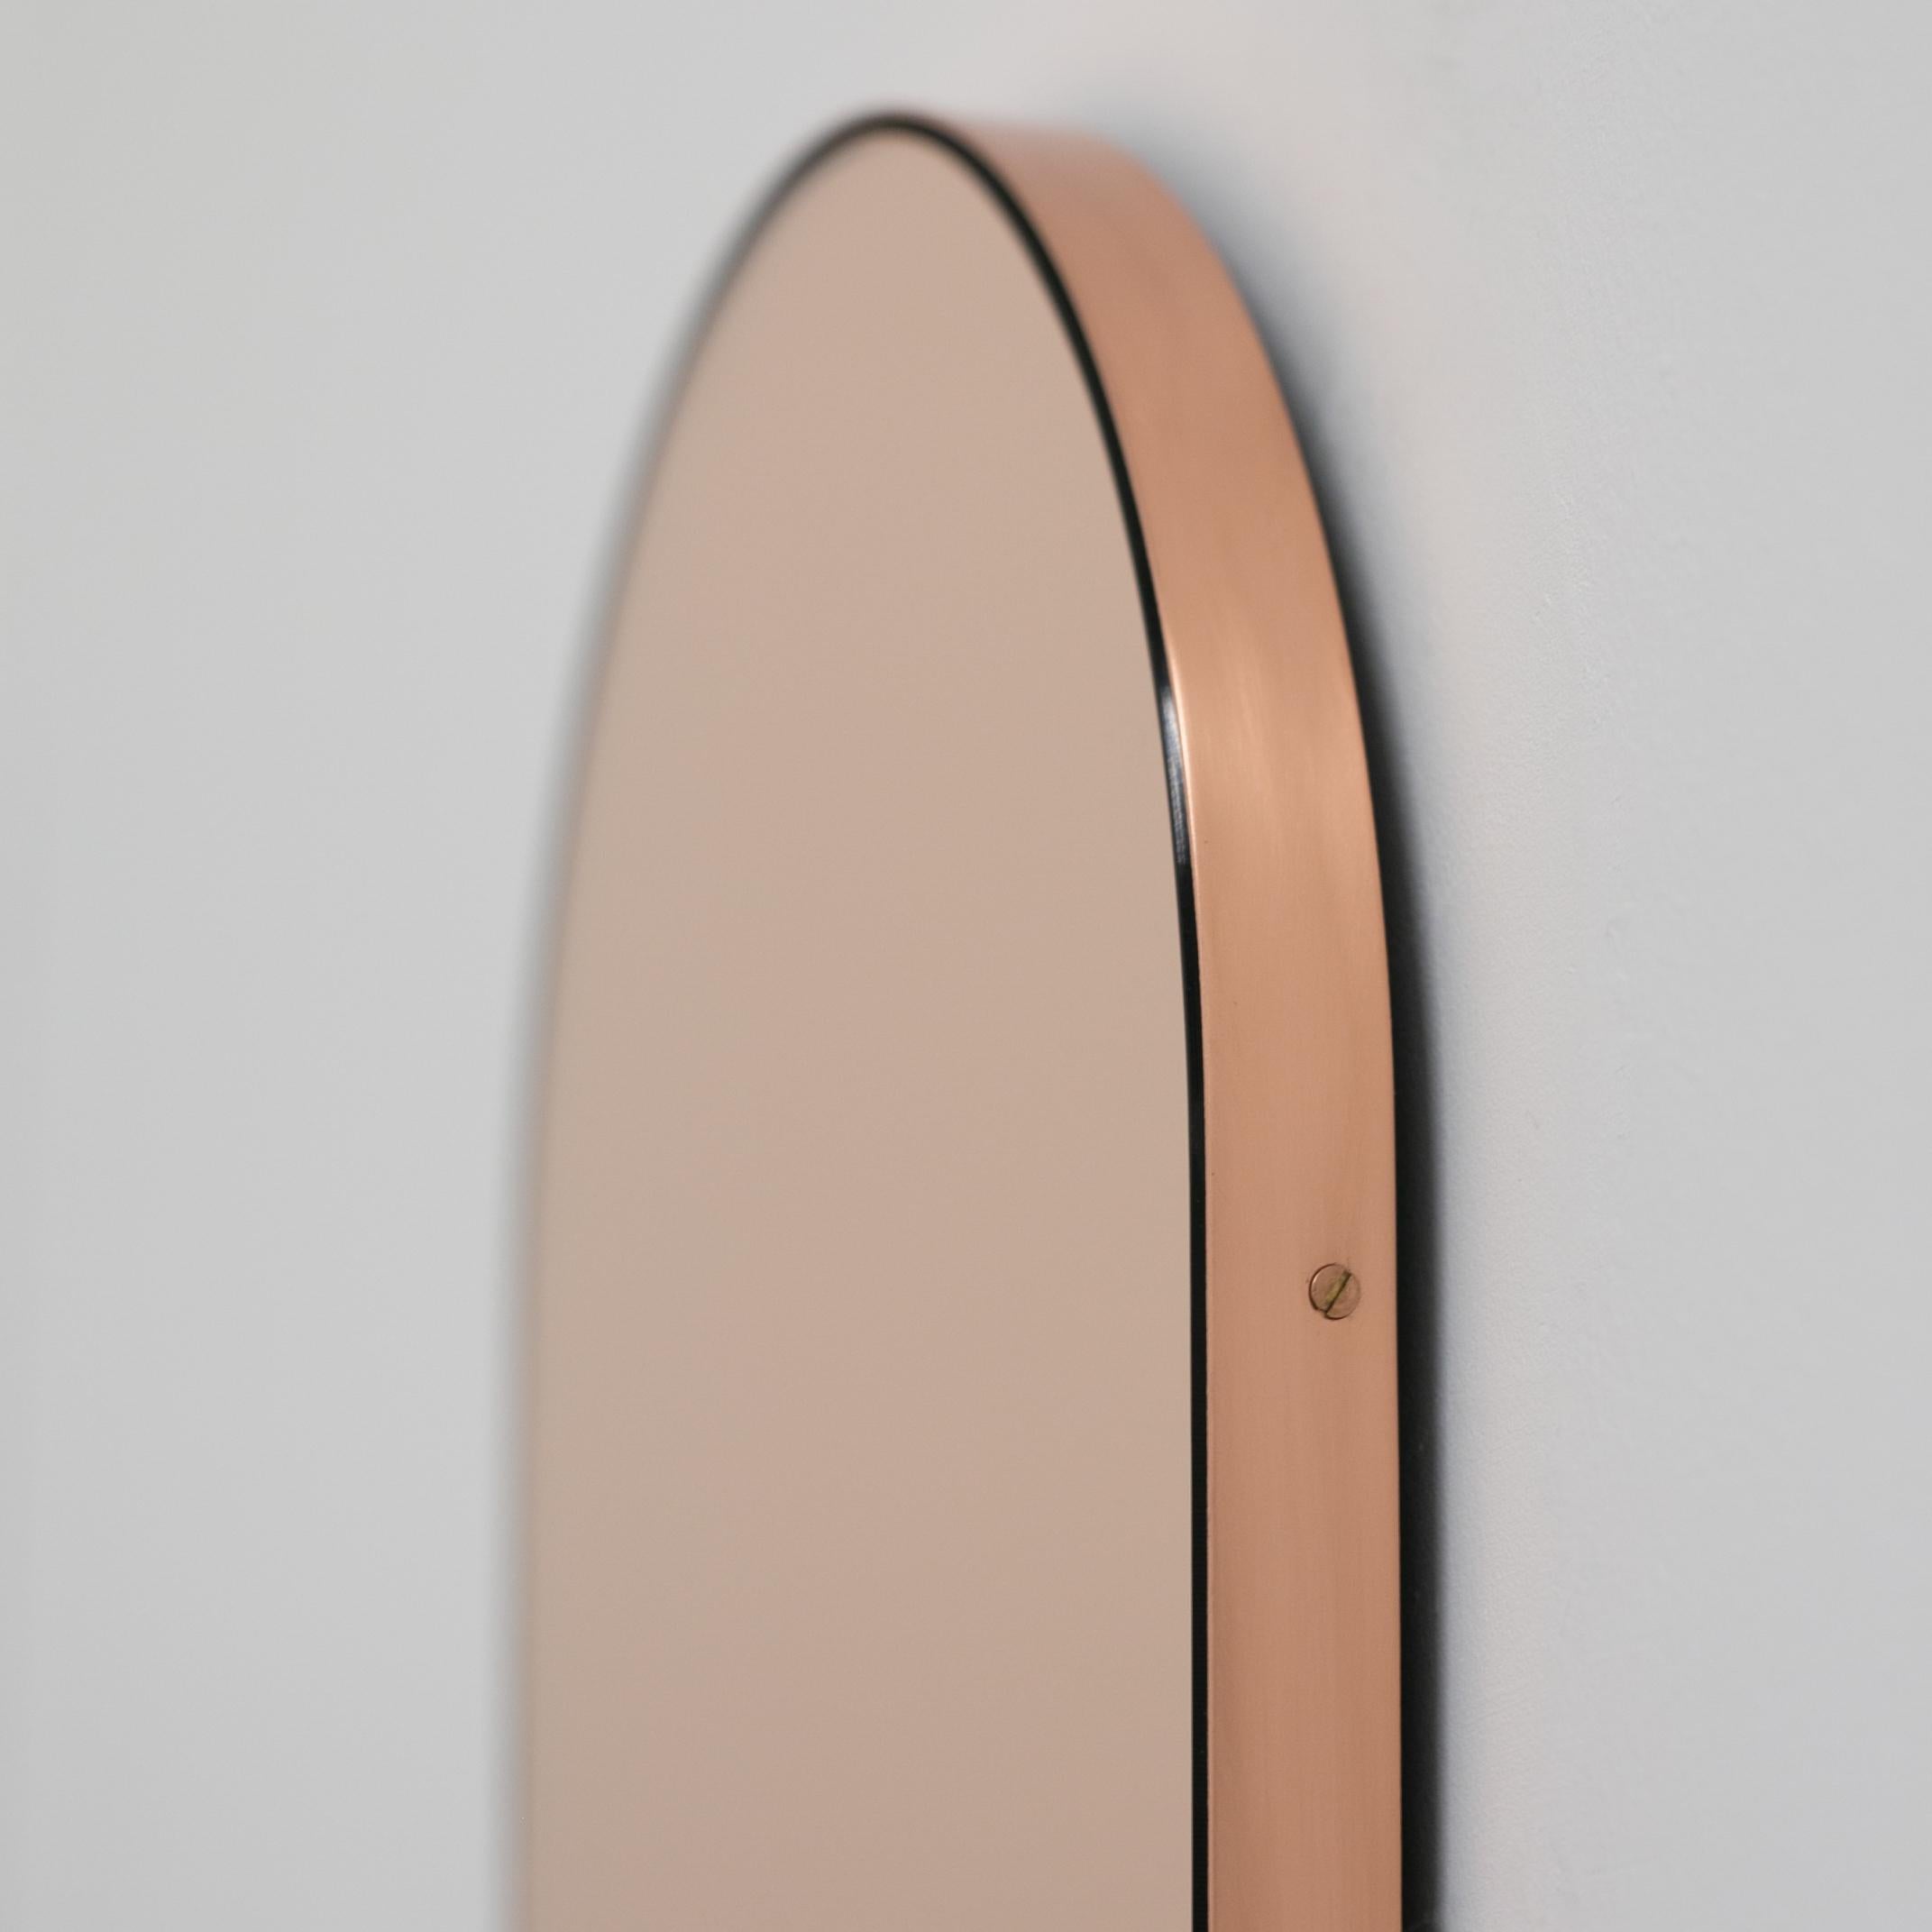 Zeitgenössischer kapselförmiger Spiegel in Roségold oder Pfirsich mit elegantem Kupferrahmen. Entworfen und handgefertigt in London, UK. Die Details und die Verarbeitung, einschließlich der sichtbaren verkupferten Schrauben, unterstreichen die